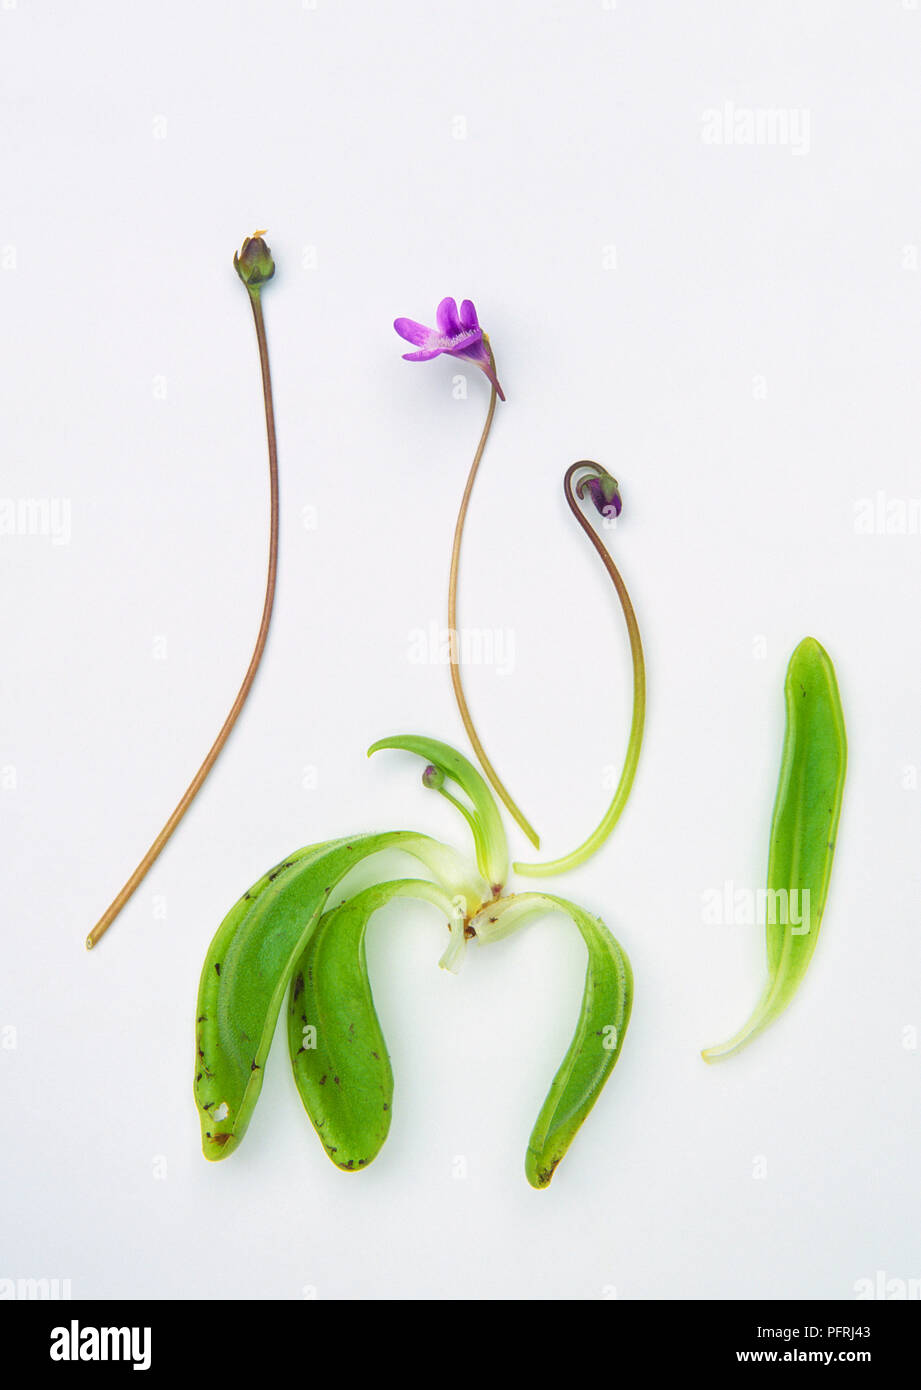 Pinguicula vulgaris (Common butterwort), long slender flower stalks and leaves of carnivorous plant Stock Photo